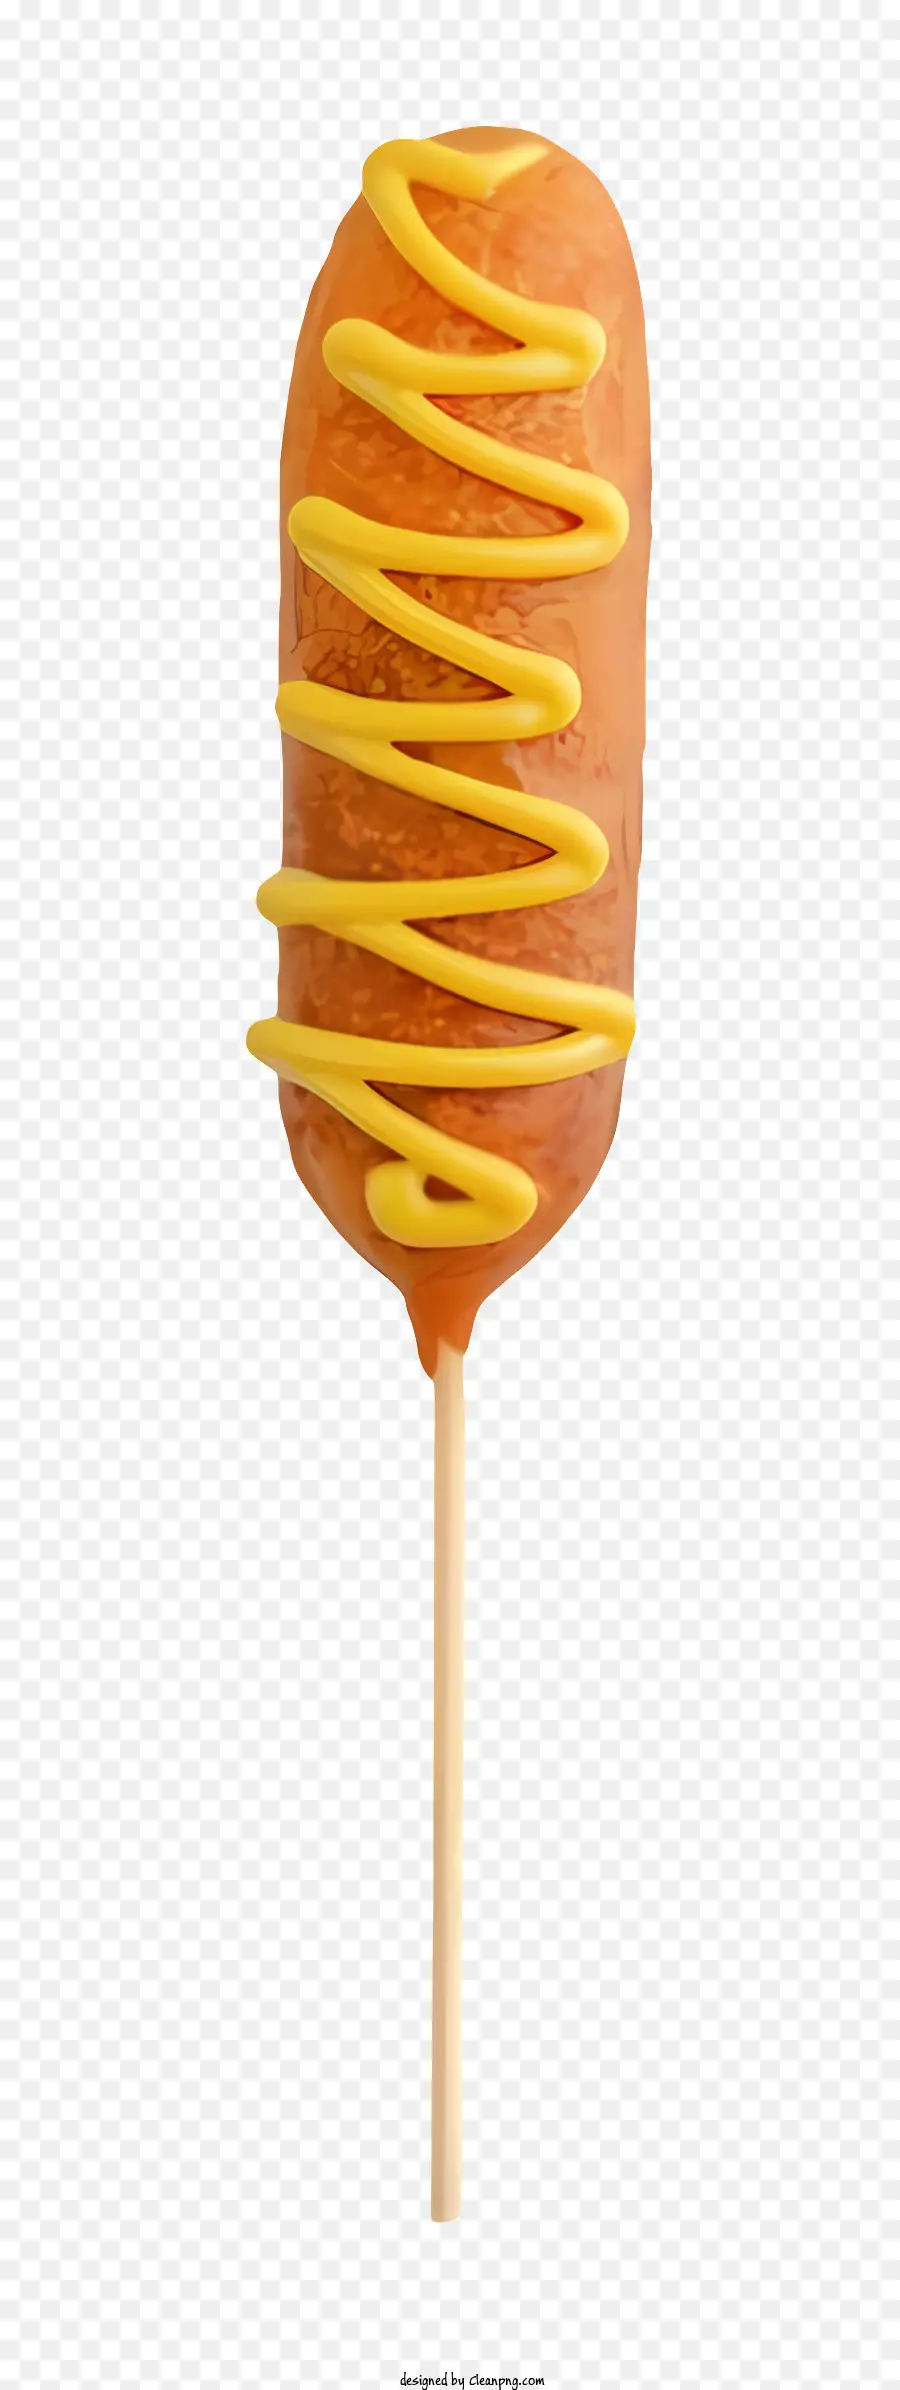 Karamell -Lutscher Süßigkeiten auf einem Stock gelb geschwirmte Süßigkeiten Lutscher mit Zuckerguss Karamellgeschmack Süßigkeiten - Gelber Karamelllollipop mit weißem Zuckergusswirbel